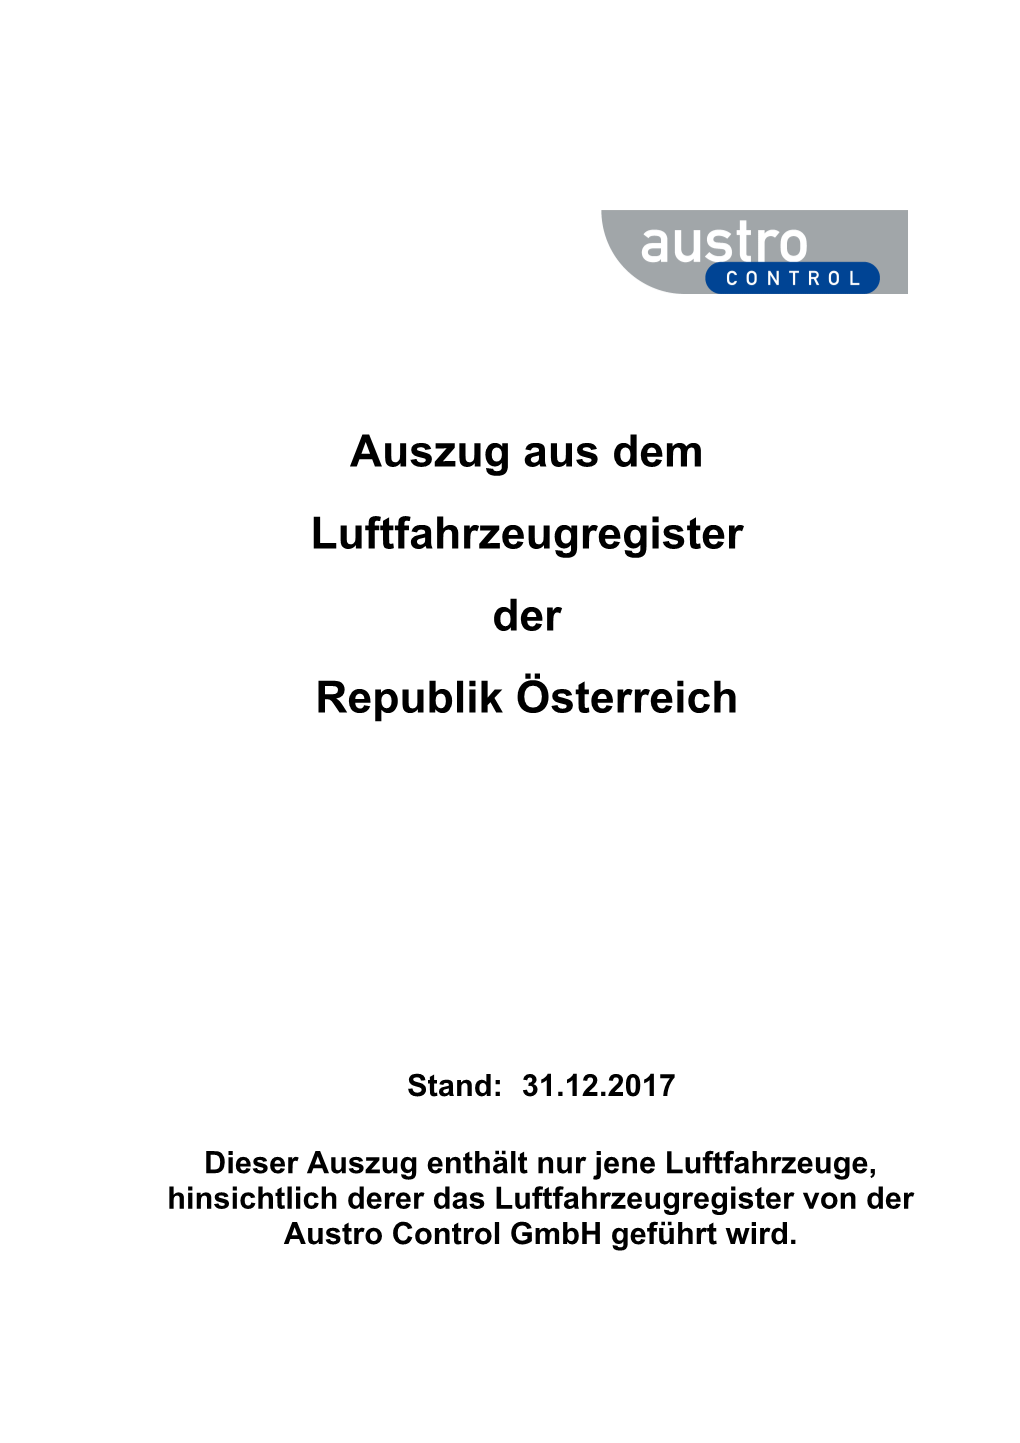 Auszug Aus Dem Luftfahrzeugregister Der Republik Österreich